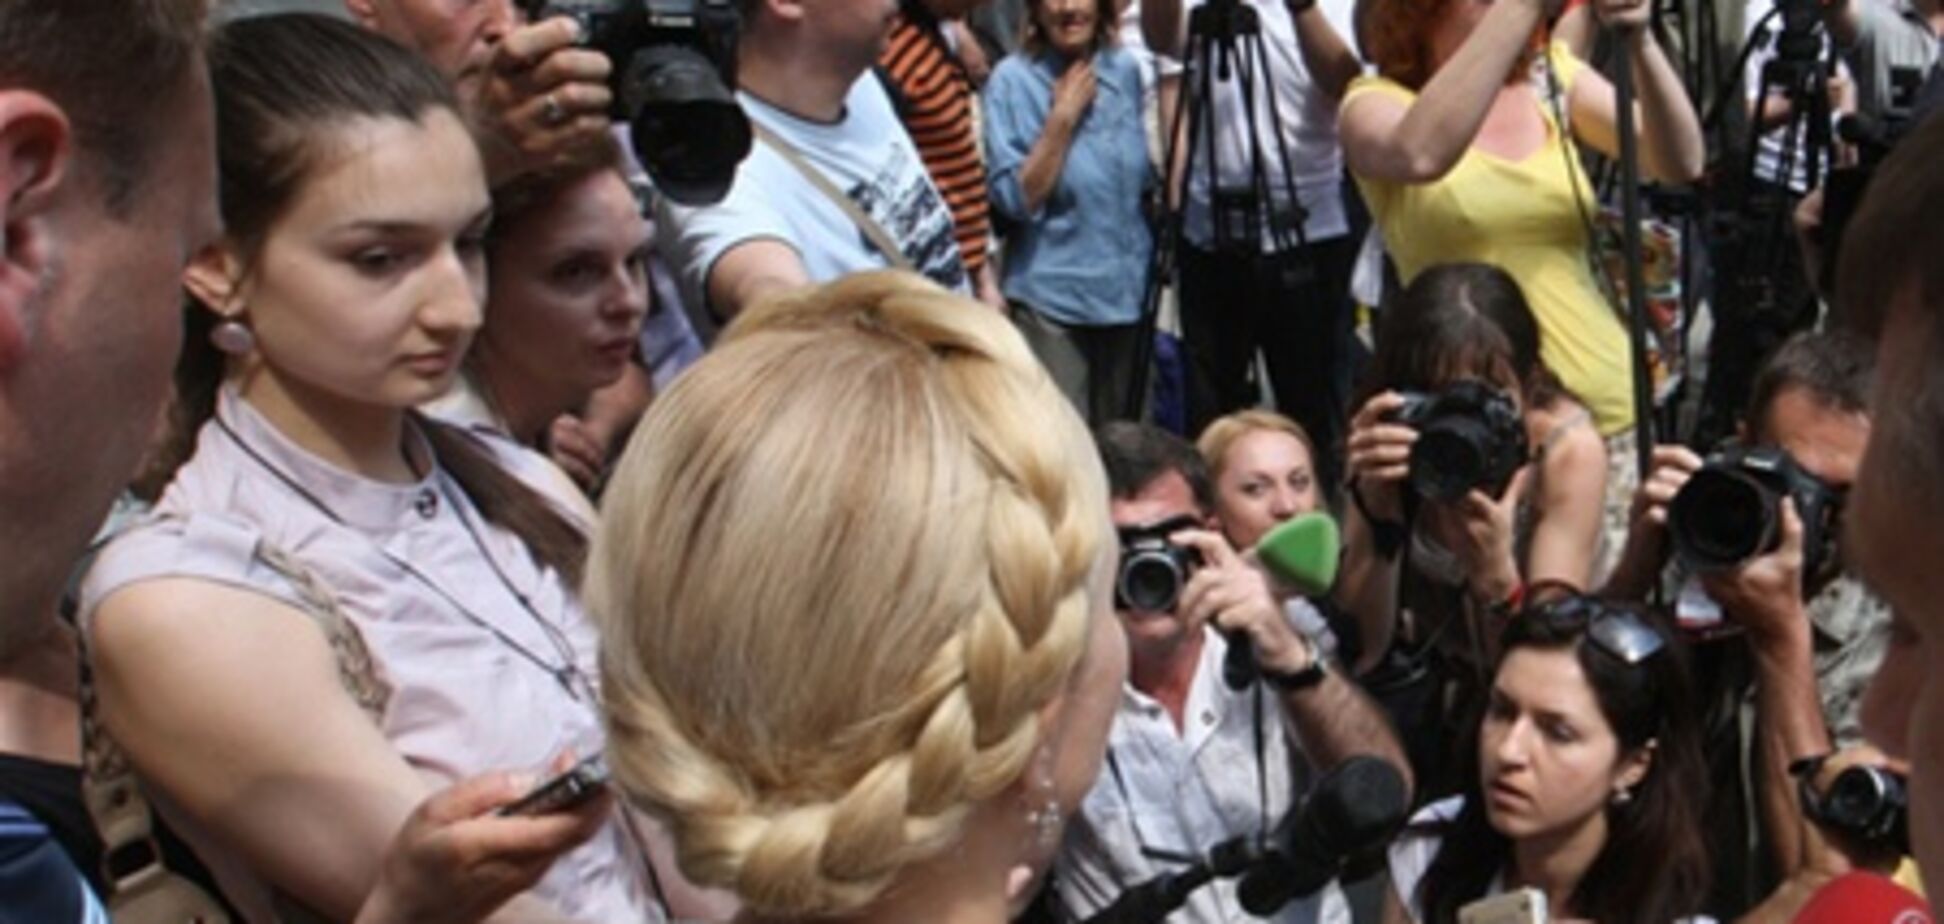 Газовое обвинение для Тимошенко расписано на 81-й странице